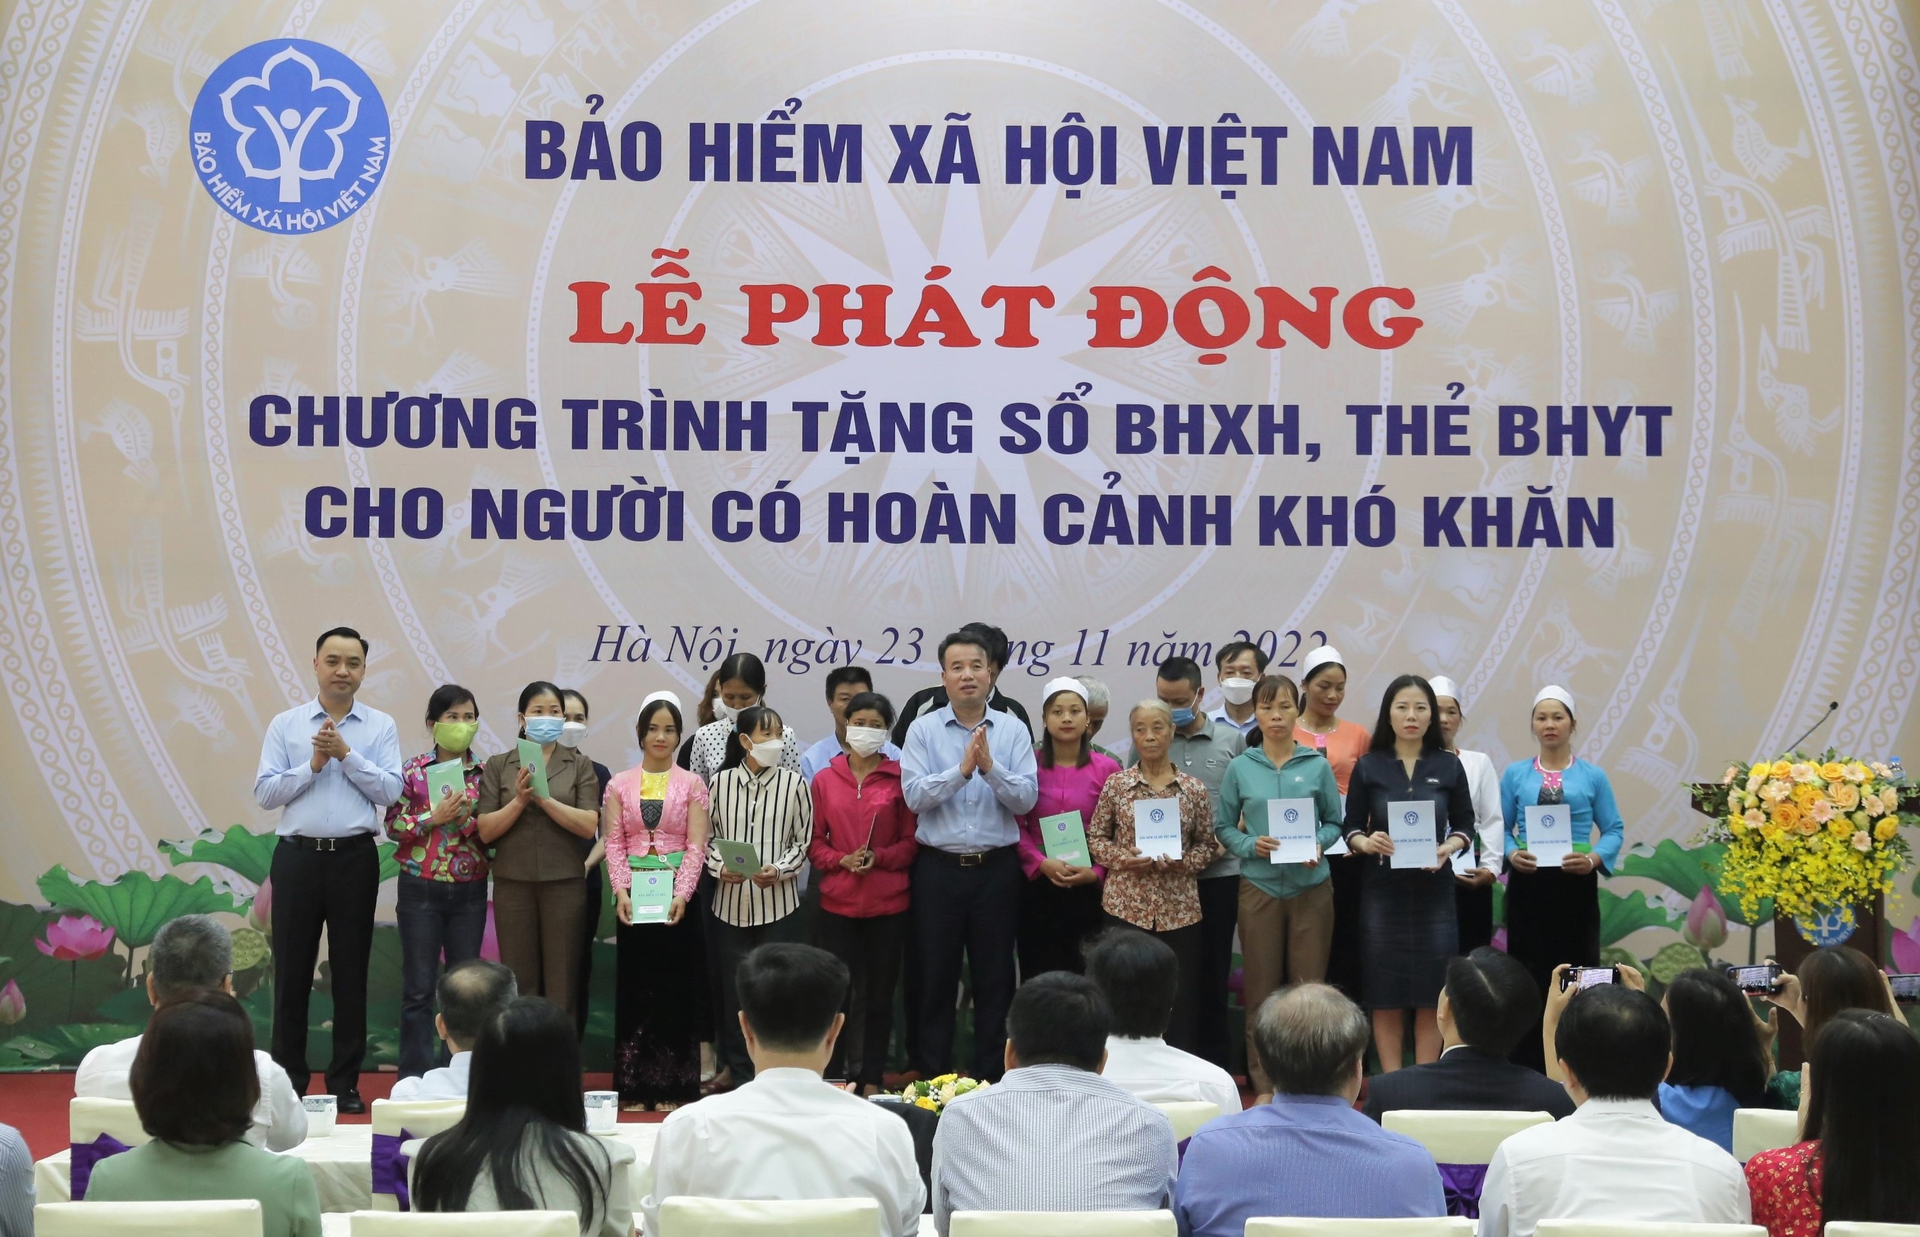 Bà con dân tộc thiểu số được lãnh đạo BHXH Việt Nam và các đơn vị đồng hành tặng sổ BHXH, thẻ BHYT tại lễ phát động.